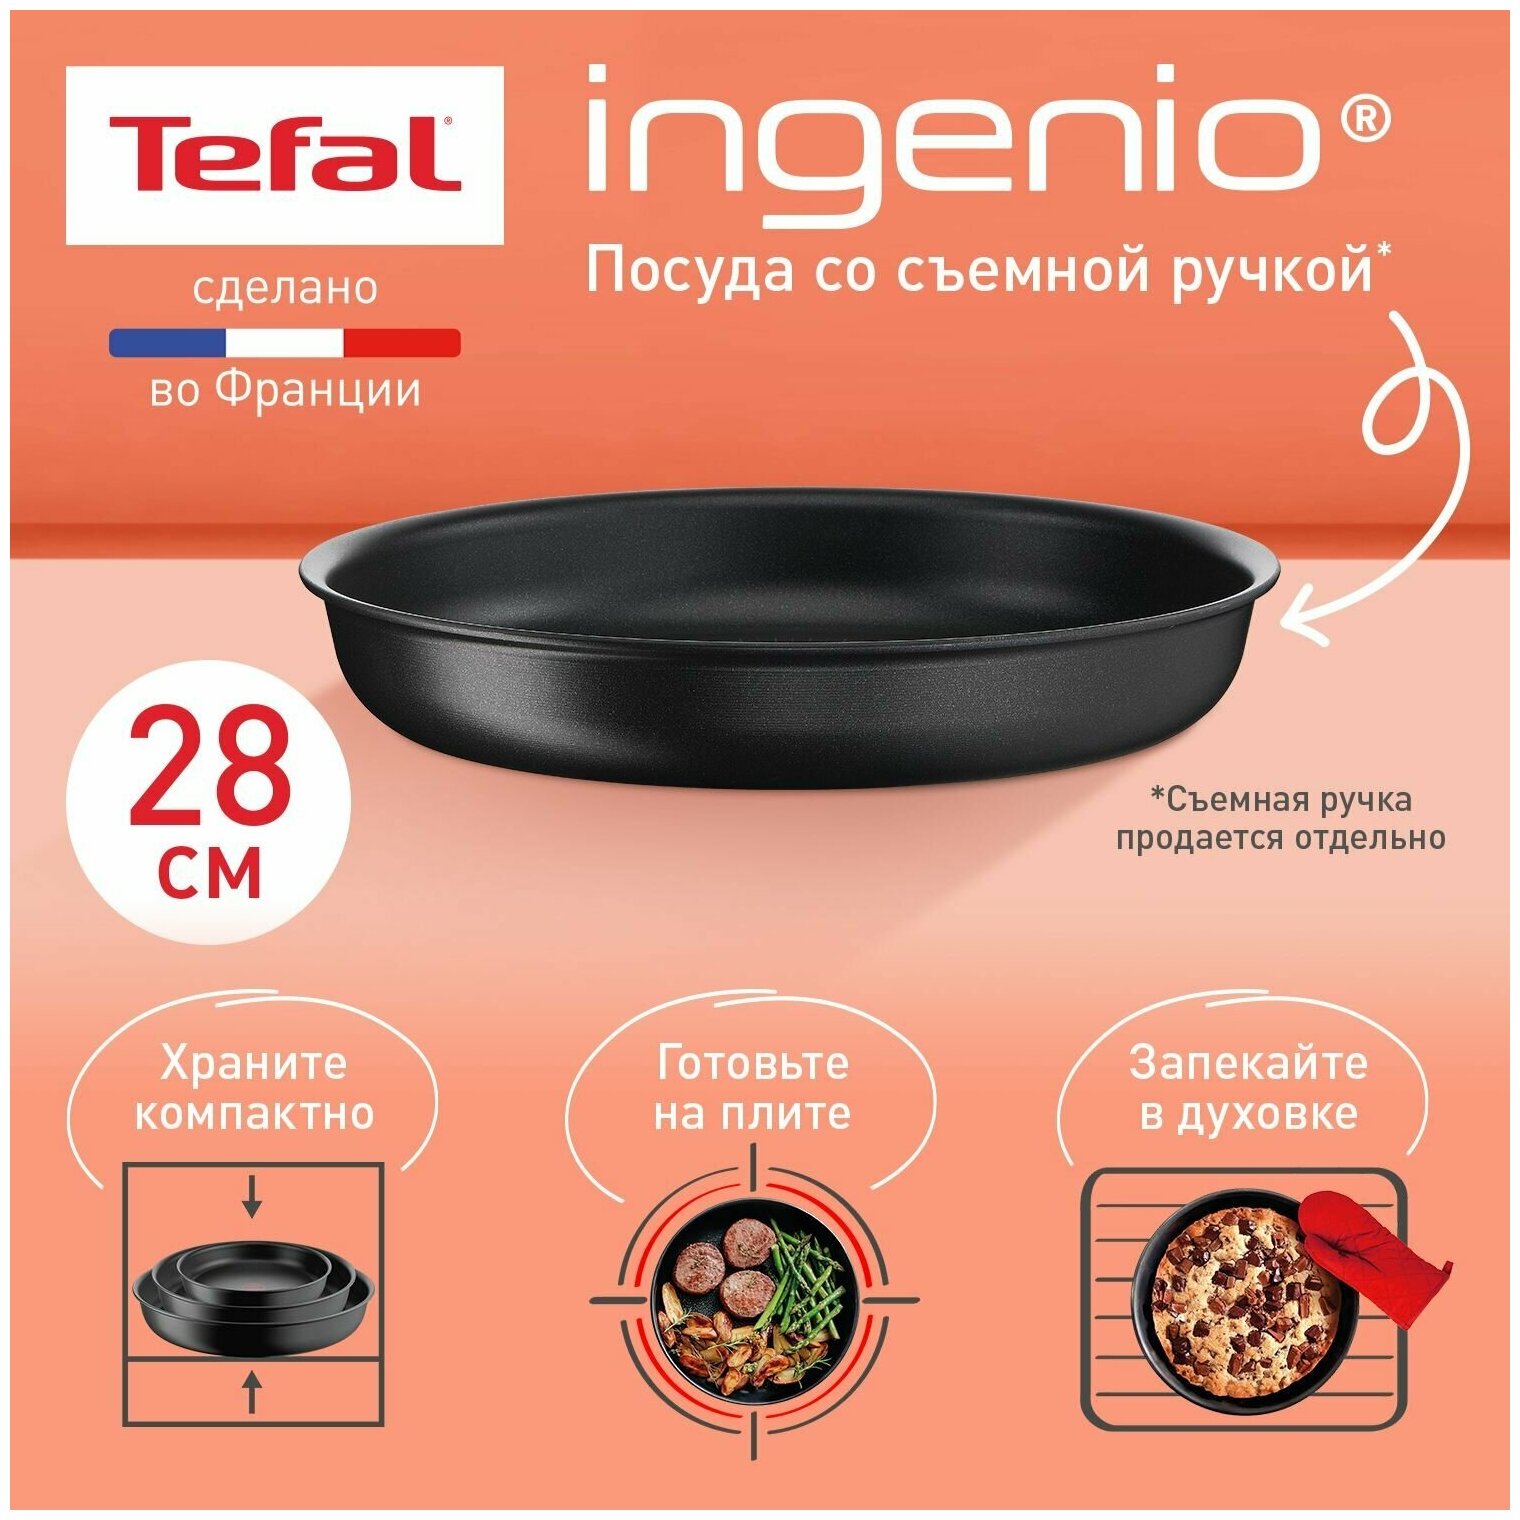 Сковорода со съемной ручкой Tefal Ingenio Unlimited L7630632, диаметр 28 см, с индикатором температуры, с антипригарным покрытием, подходит для индукции